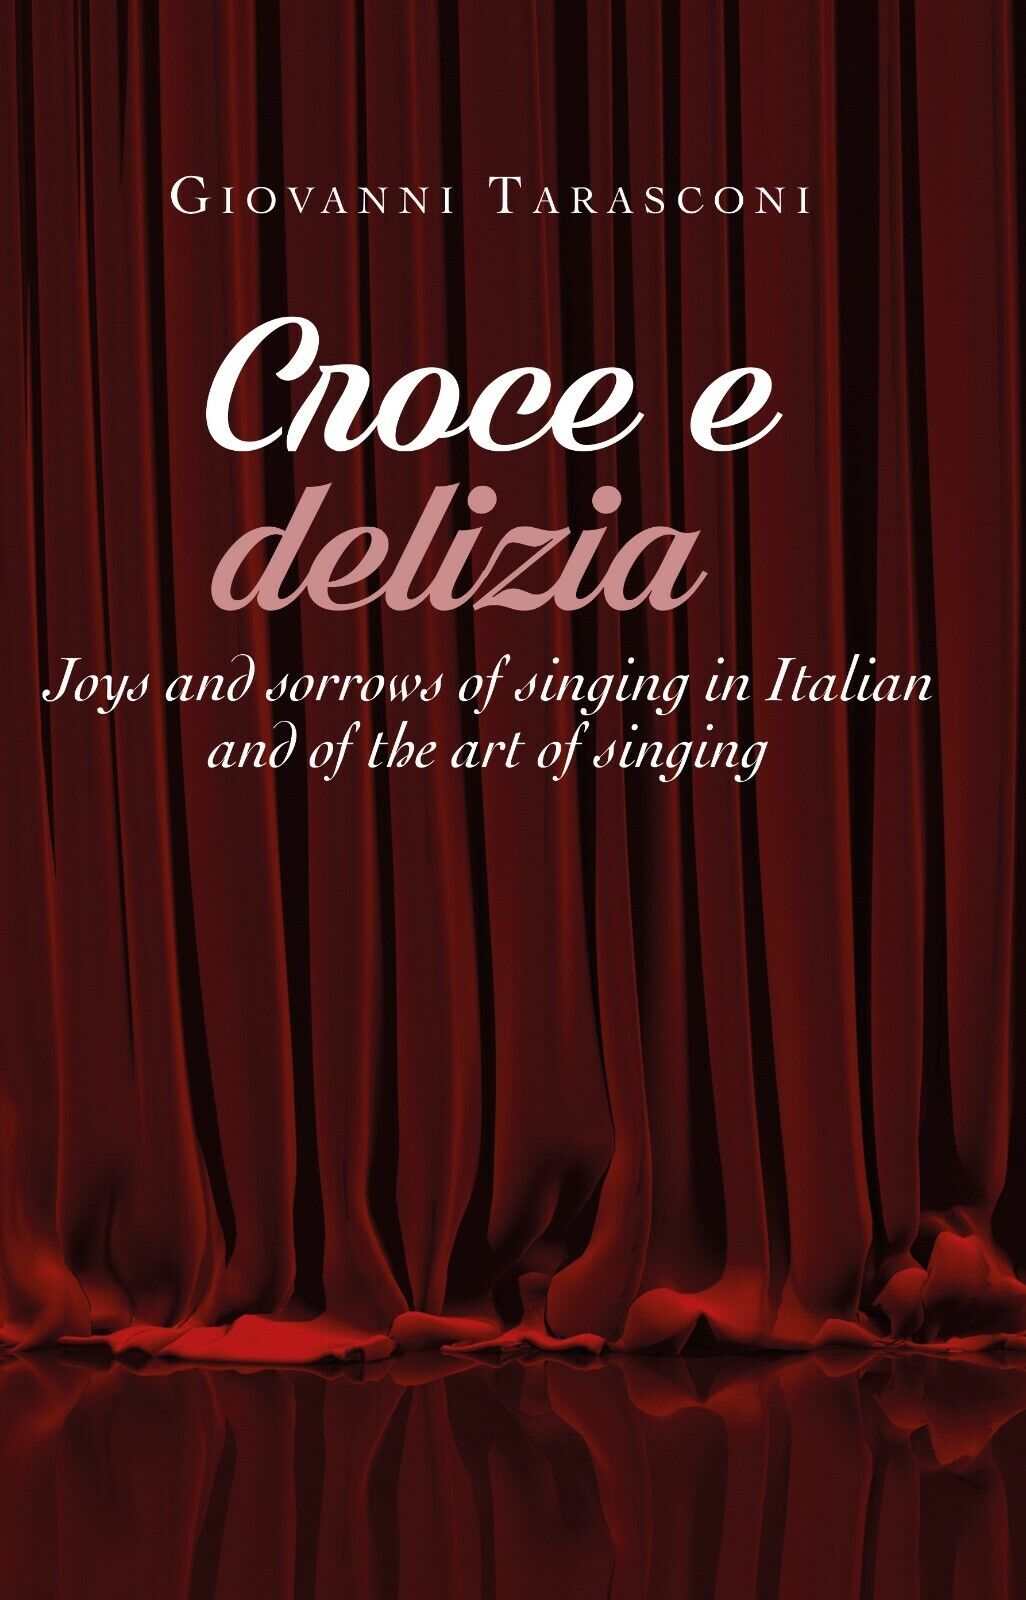 CROCE E DELIZIA Joys and sorrows of singing in Italian - Tarasconi 2019 - ER